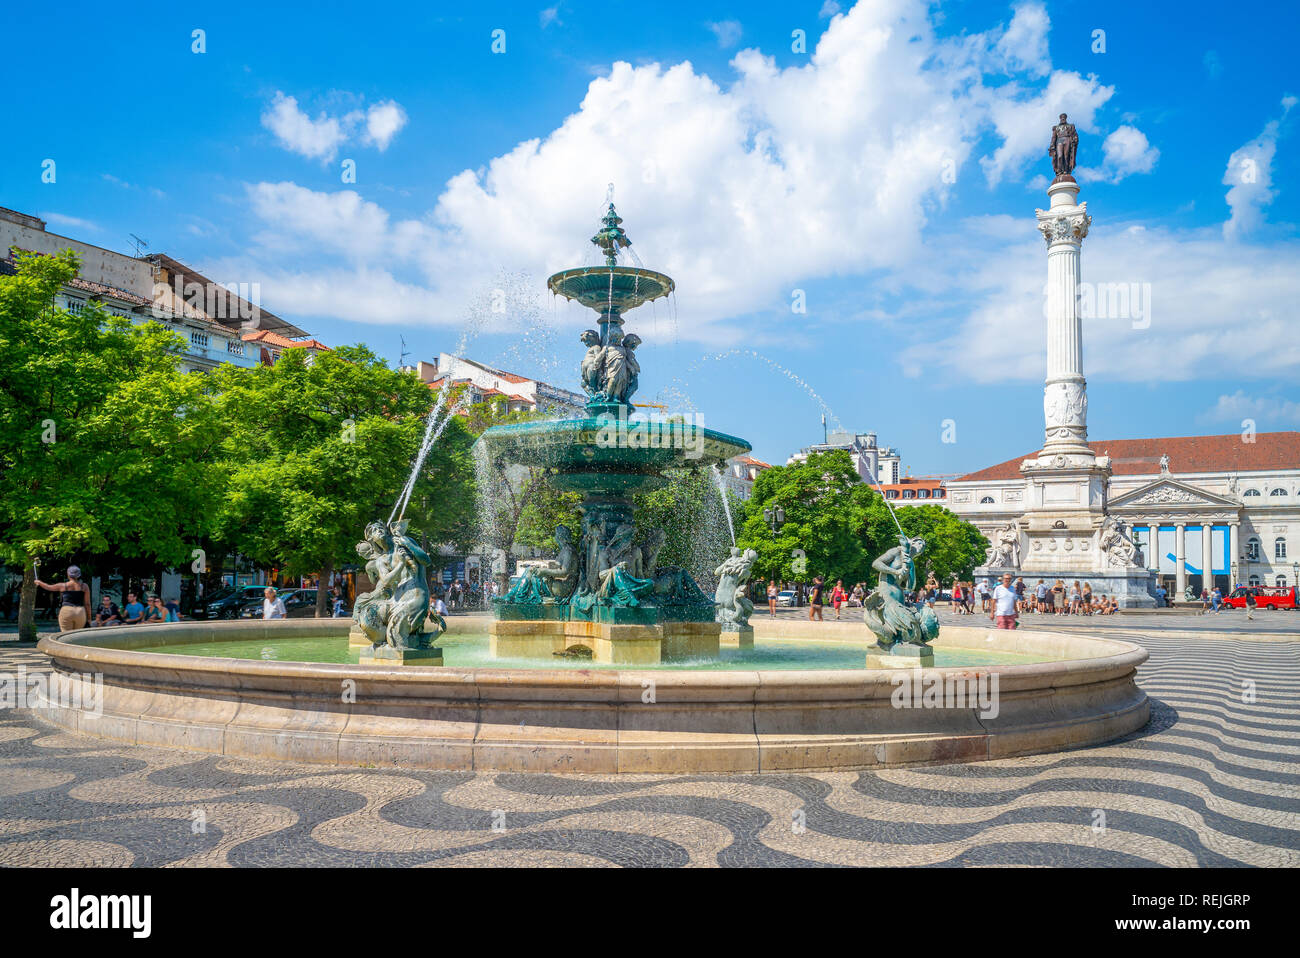 fountains in Rossio Square, Lisbon, portugal Stock Photo